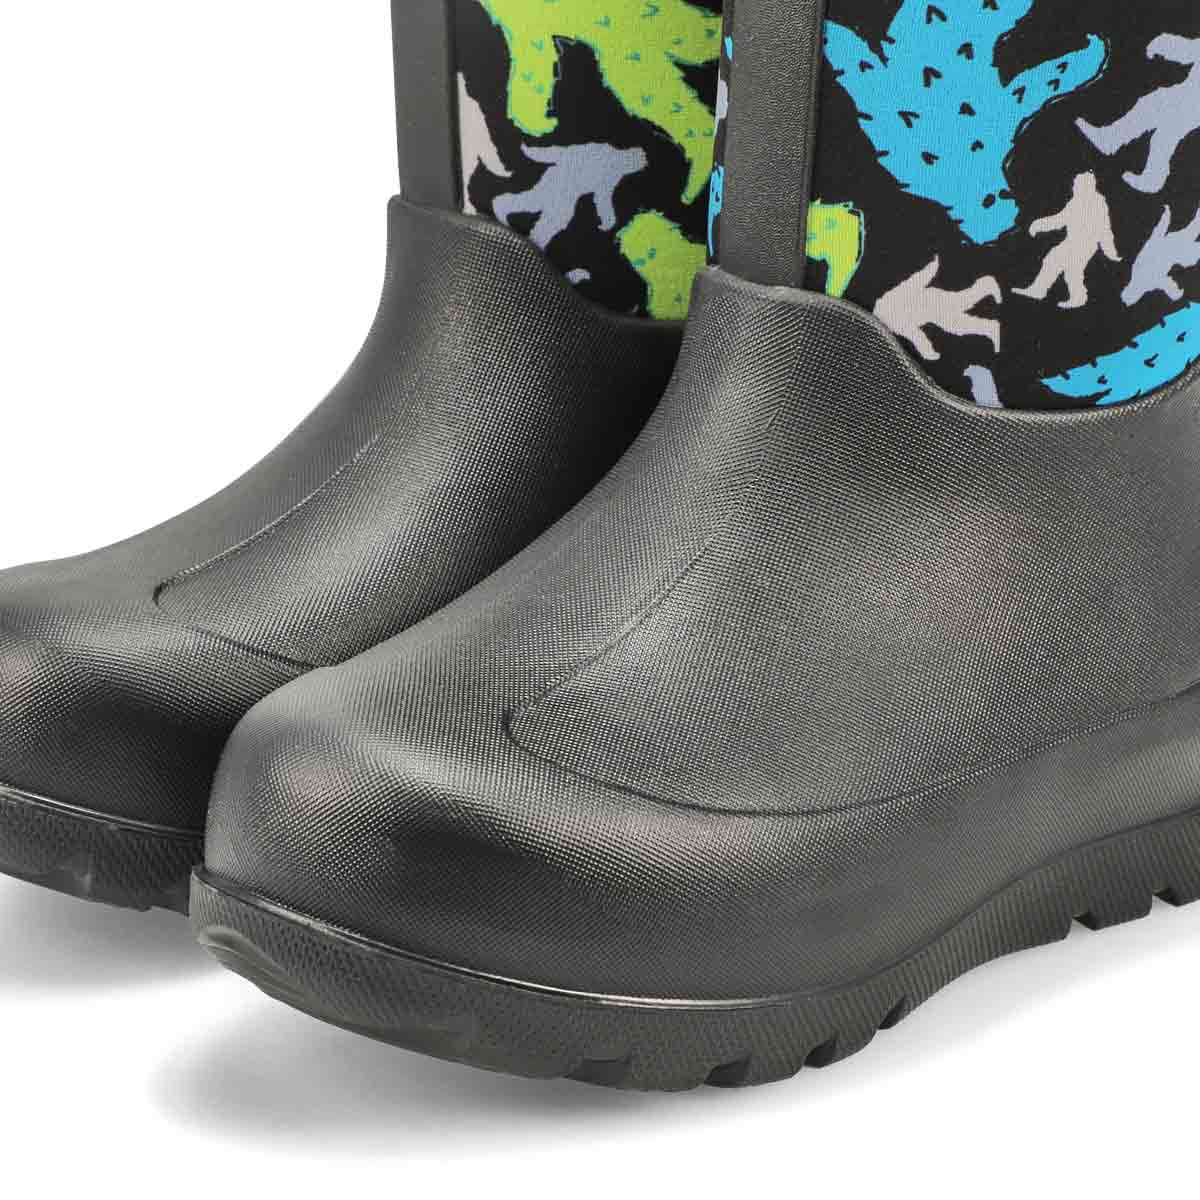 Boy's Neo-Classic Bigfoot Waterproof Boot - Black